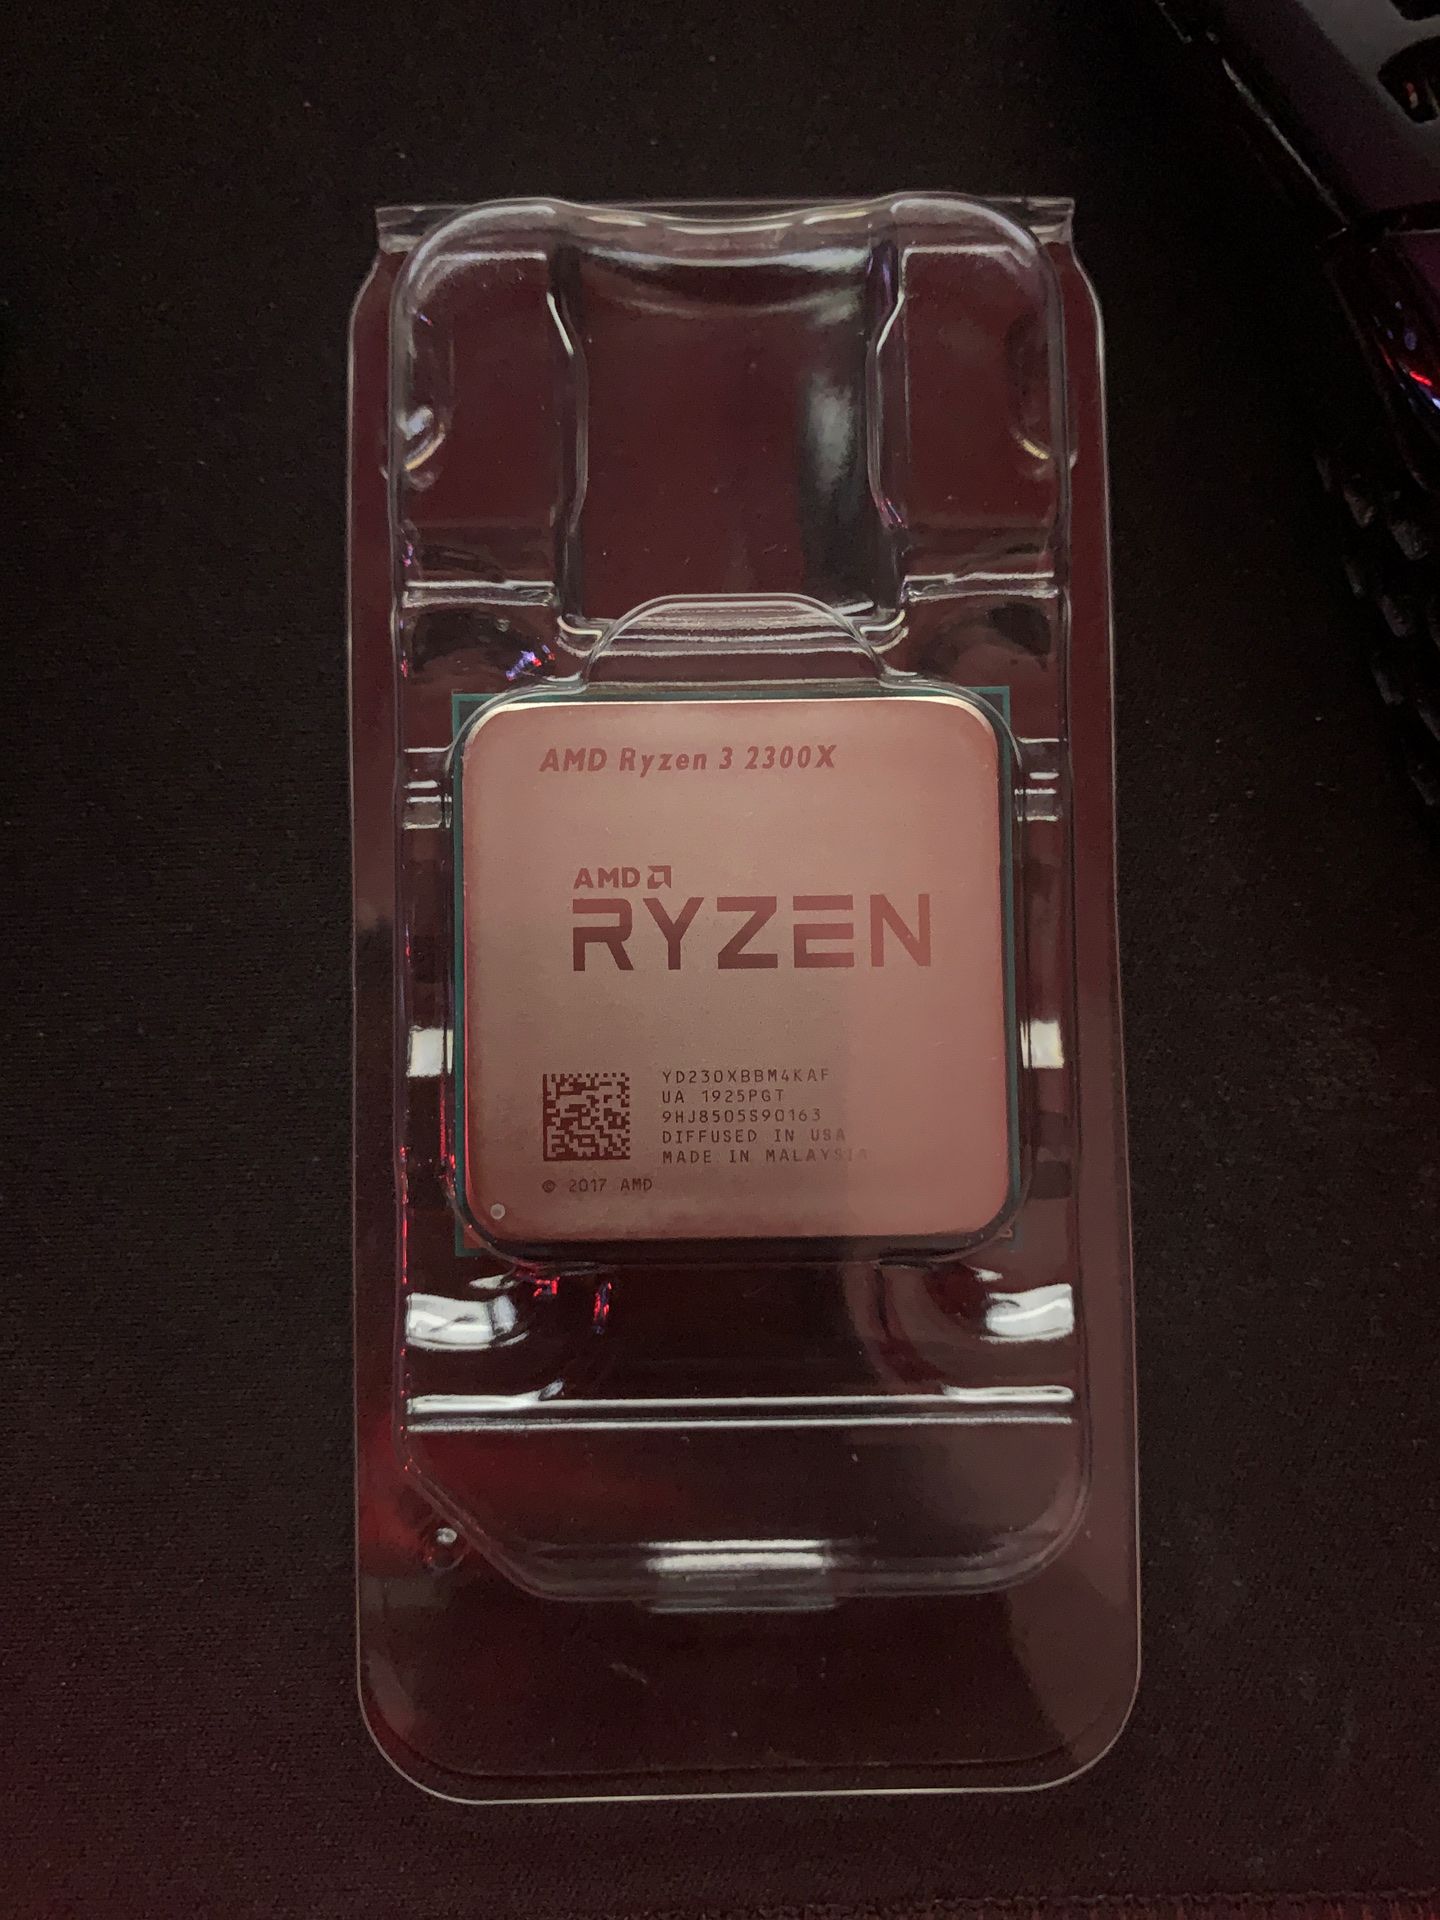 AMD Ryzen 3 2300x & Cooler Master Stealth heat sync fan